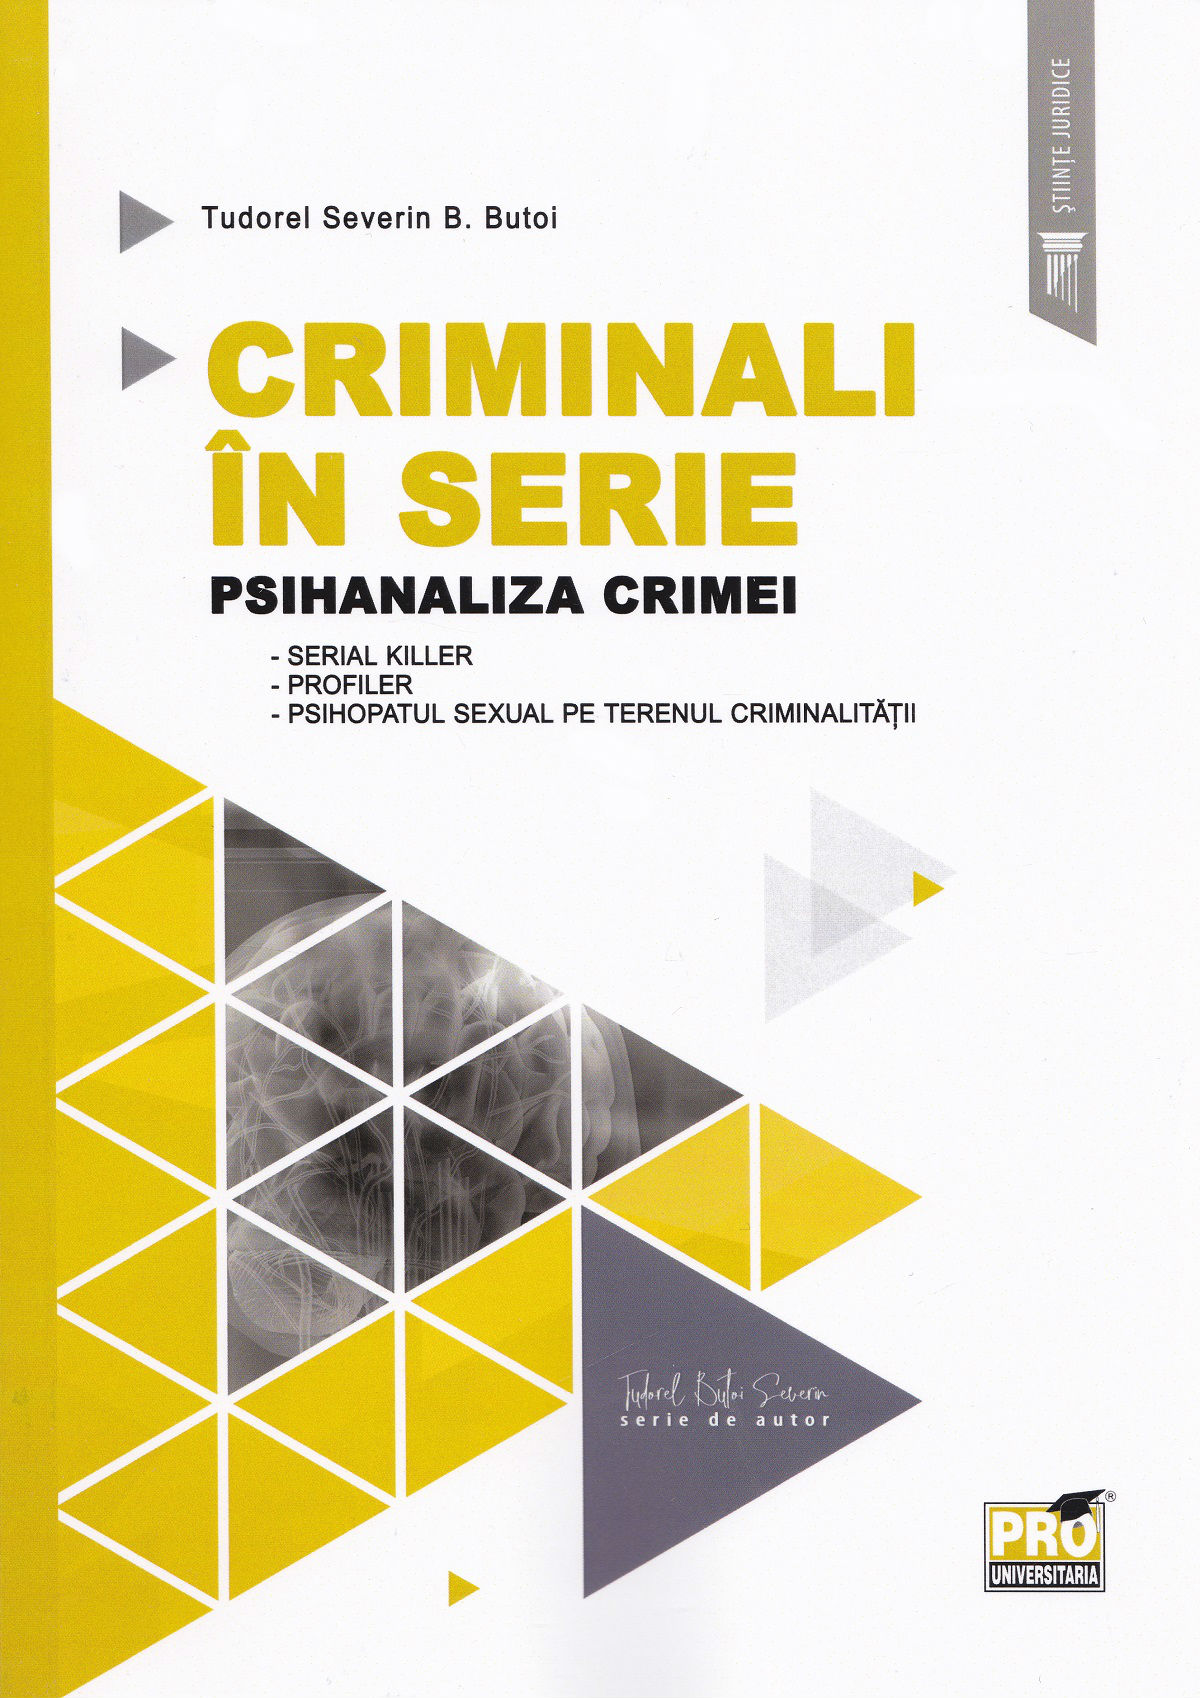 Criminali in serie - Tudorel Severin B. Butoi